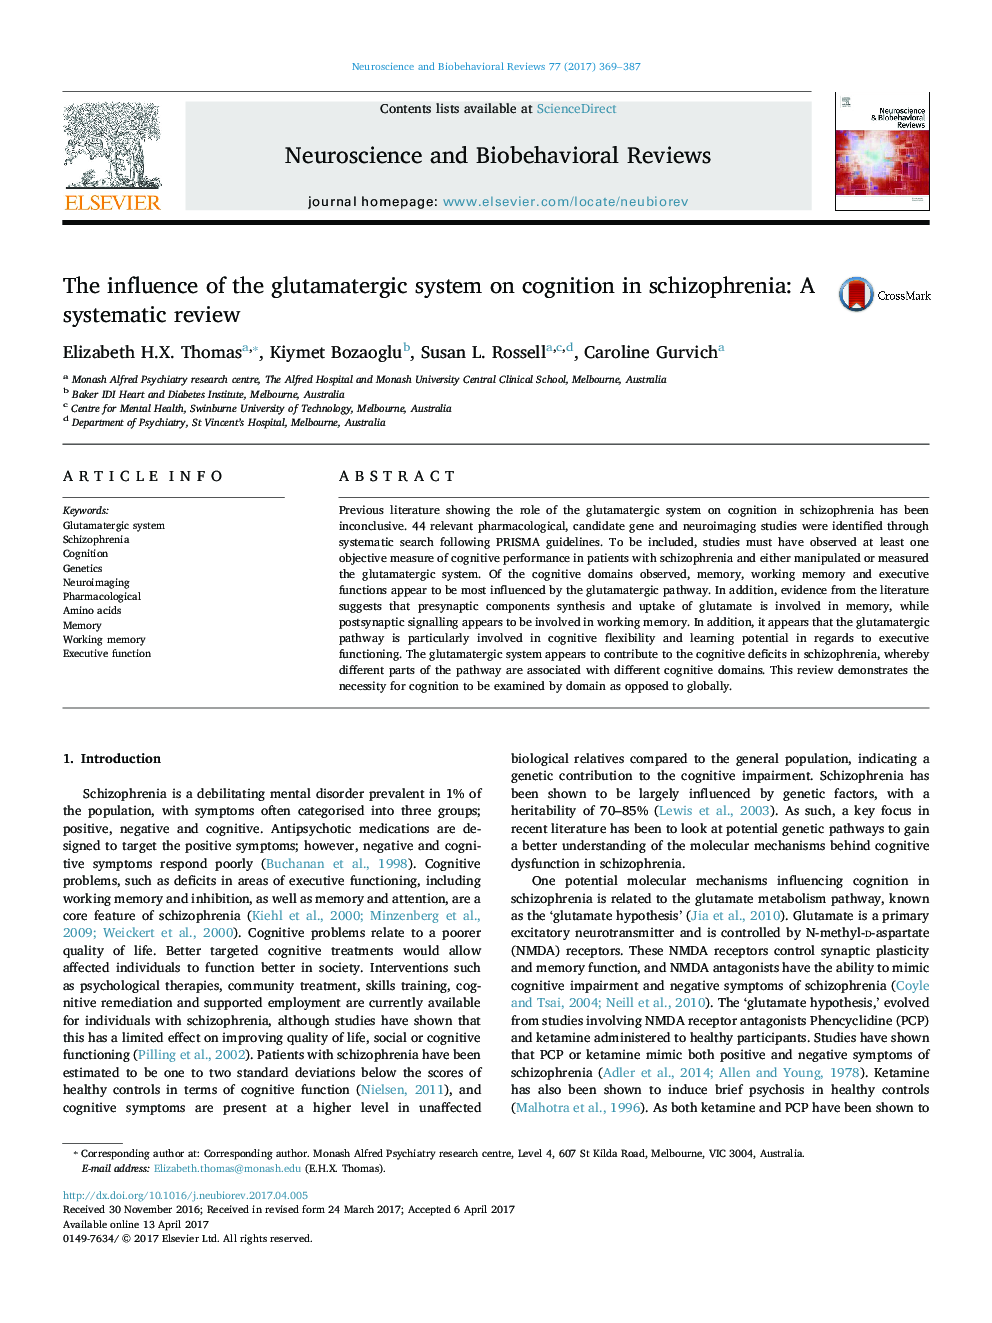 تأثیر سیستم گلوتاماترگیک بر شناخت در اسکیزوفرنی: بررسی سیستماتیک 